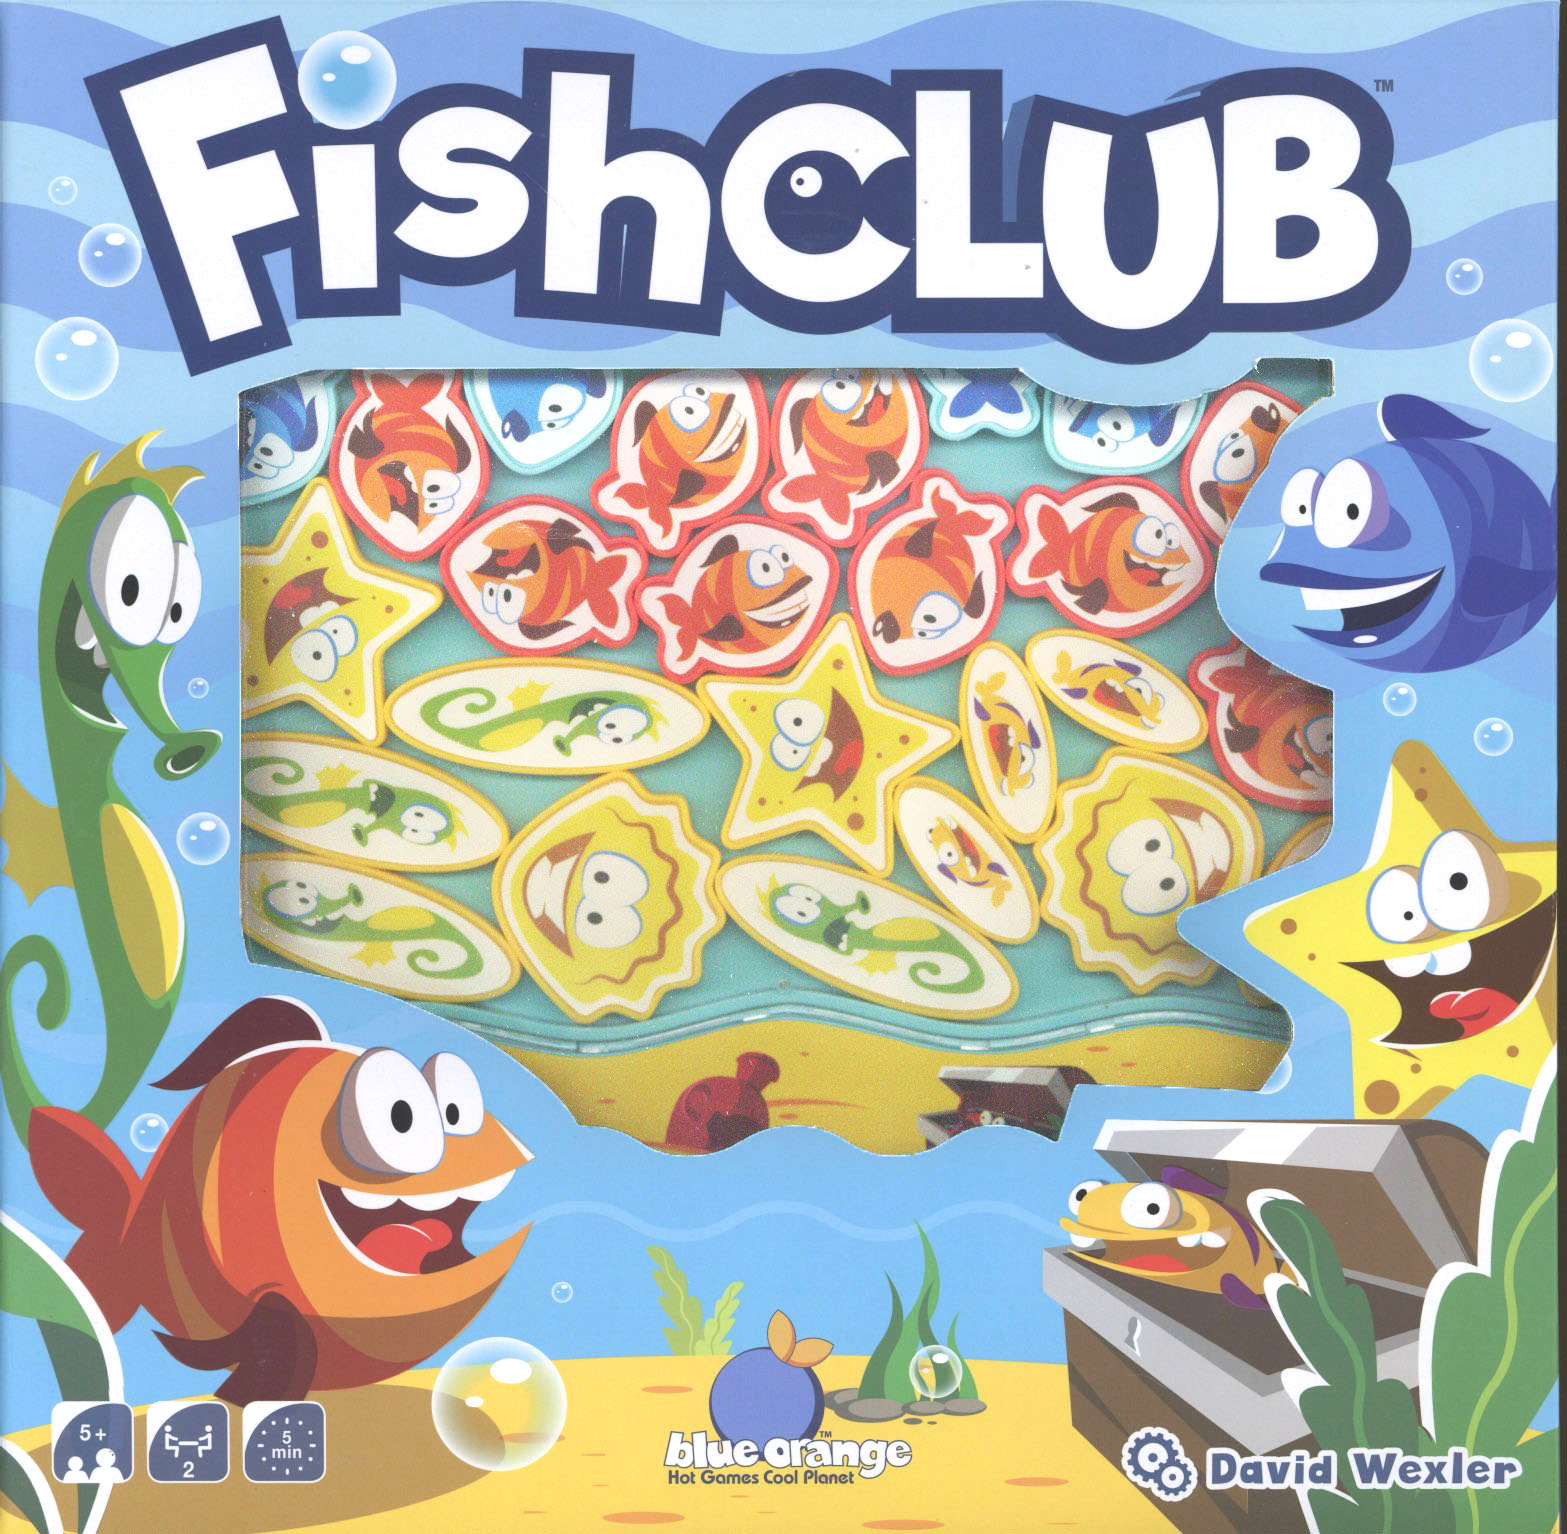 FishClub